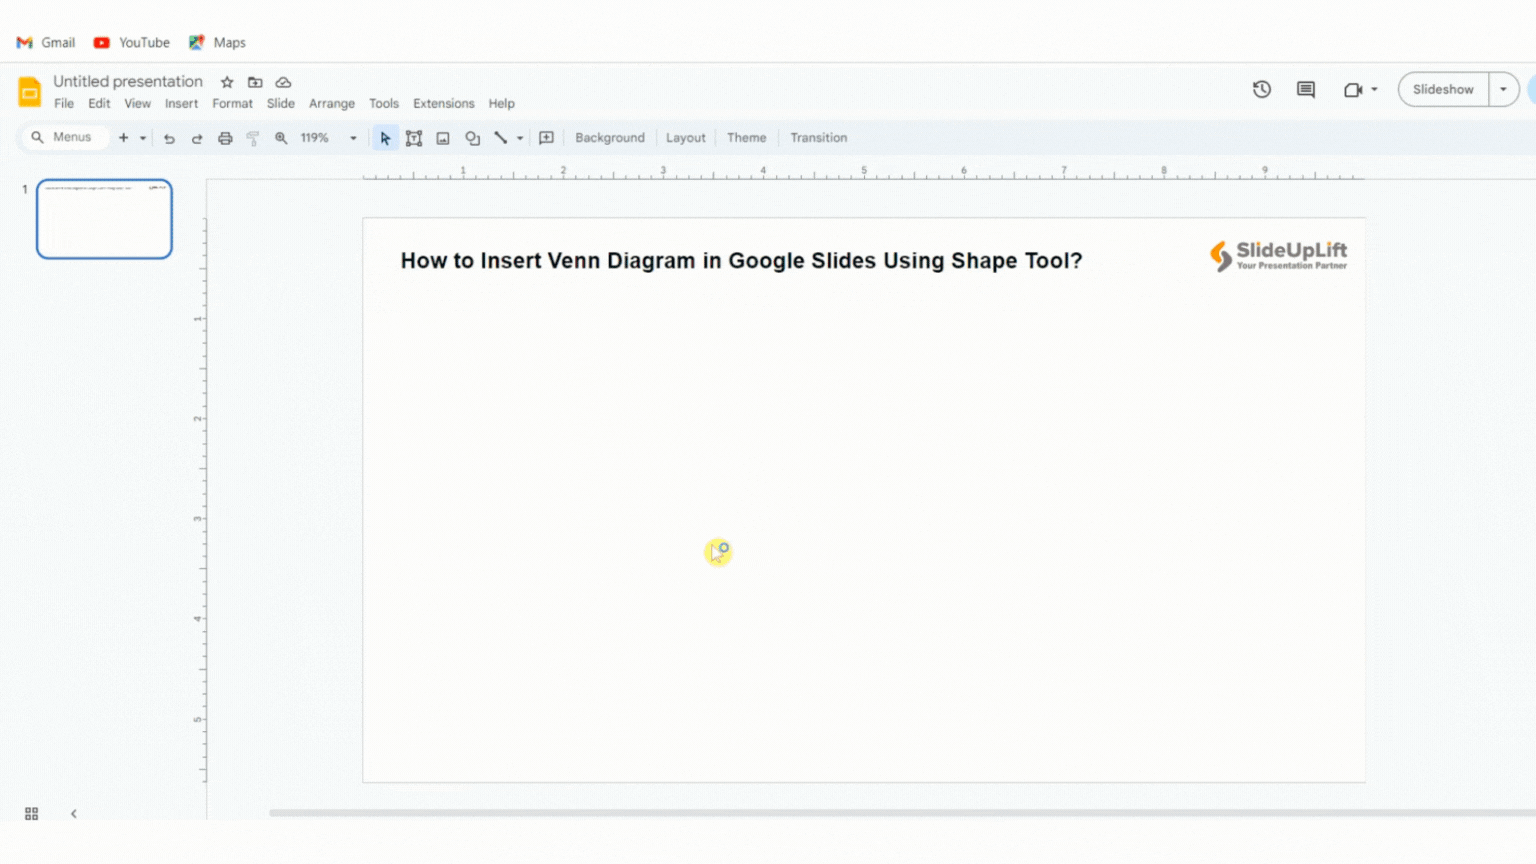 How to Insert Venn Diagram in Google Slides Using Shape Tool